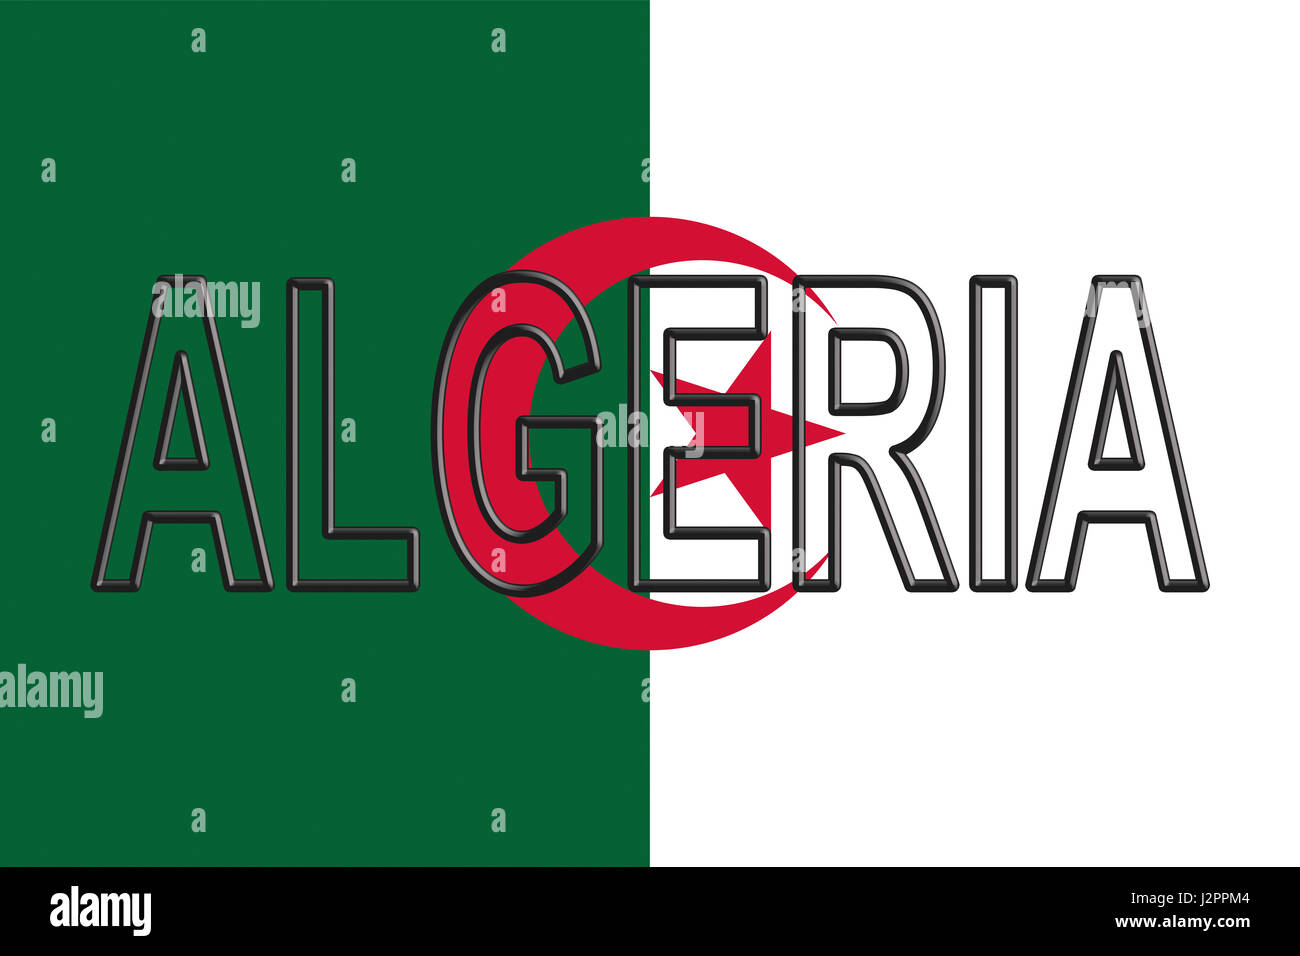 Abbildung der Flagge von Algerien mit dem Land auf die Fahne geschrieben Stockfoto